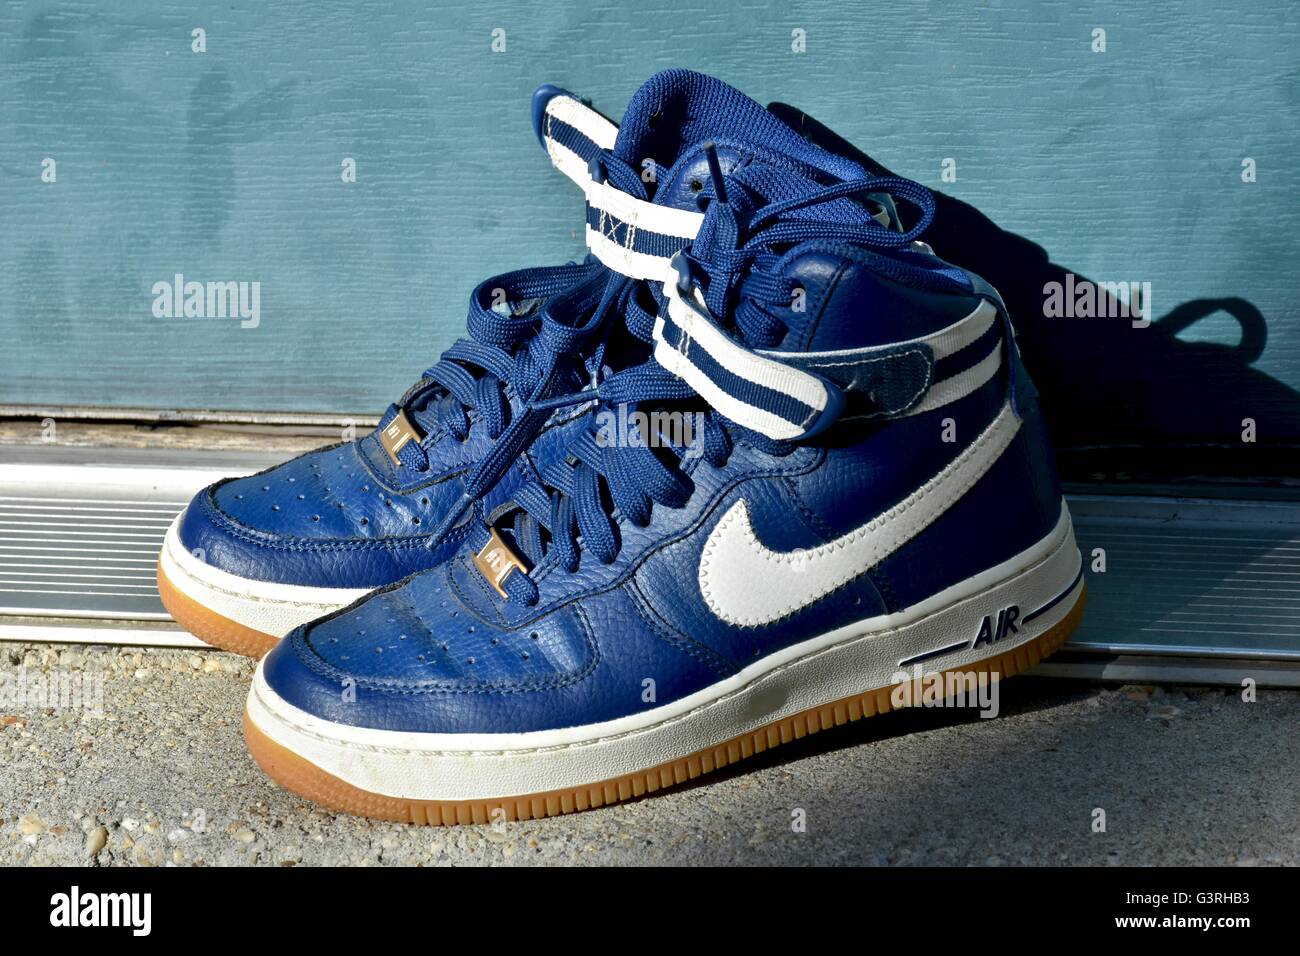 Ein paar blaue Nike Schuhe sitzen auf einer Fußmatte vor einem Haus  Stockfotografie - Alamy